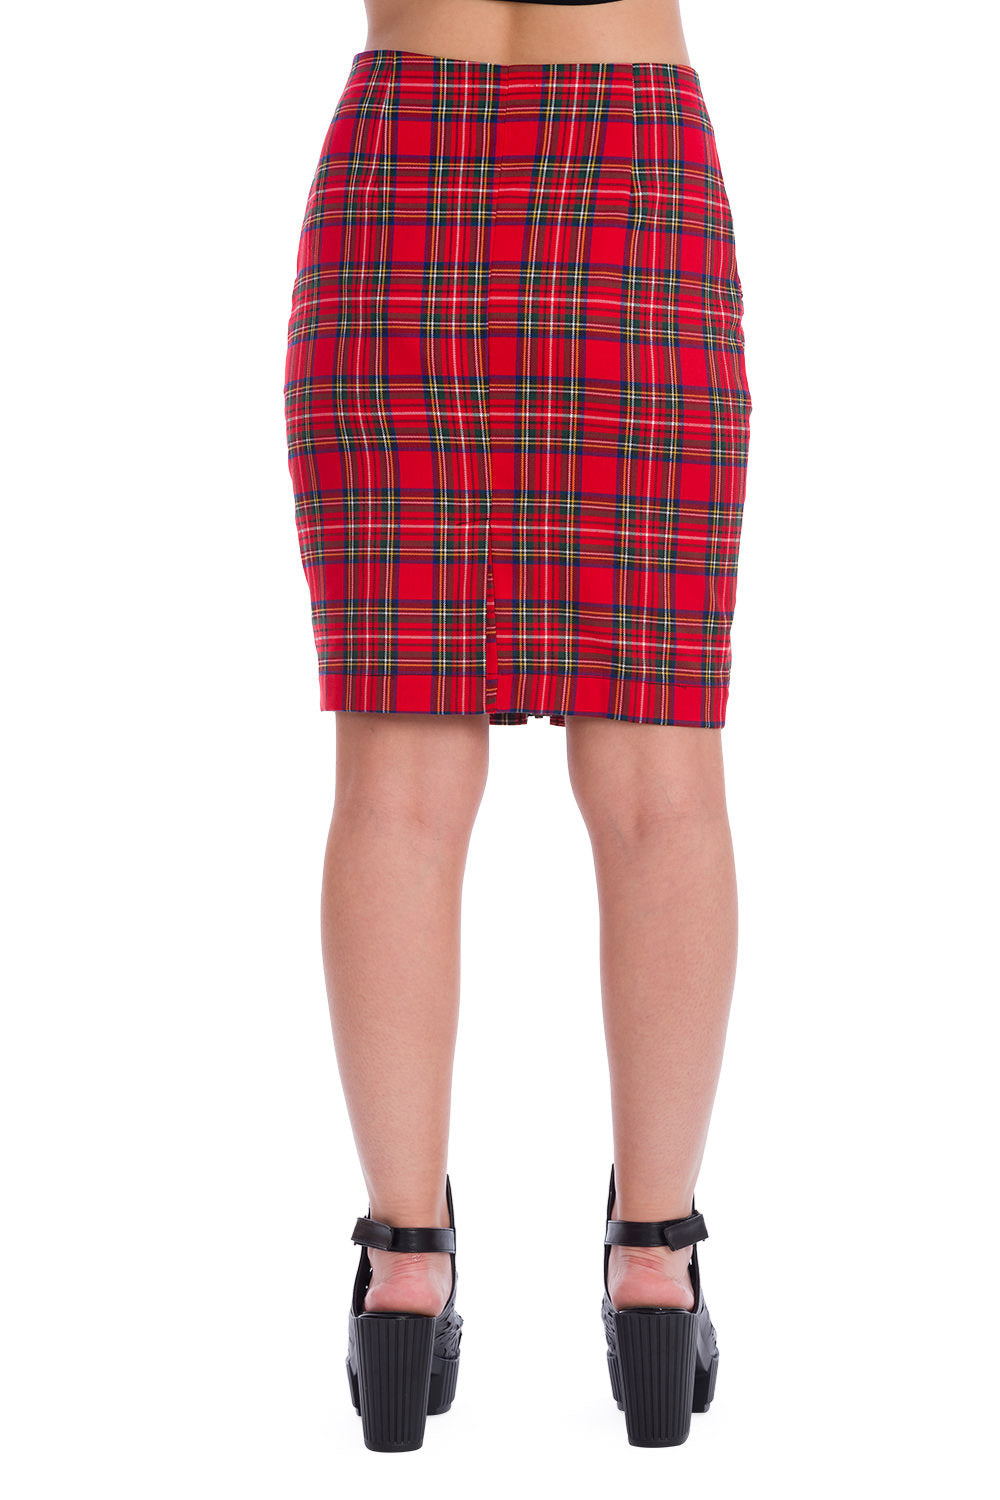 Banned Alternative Tartan Zip Pencil Skirt